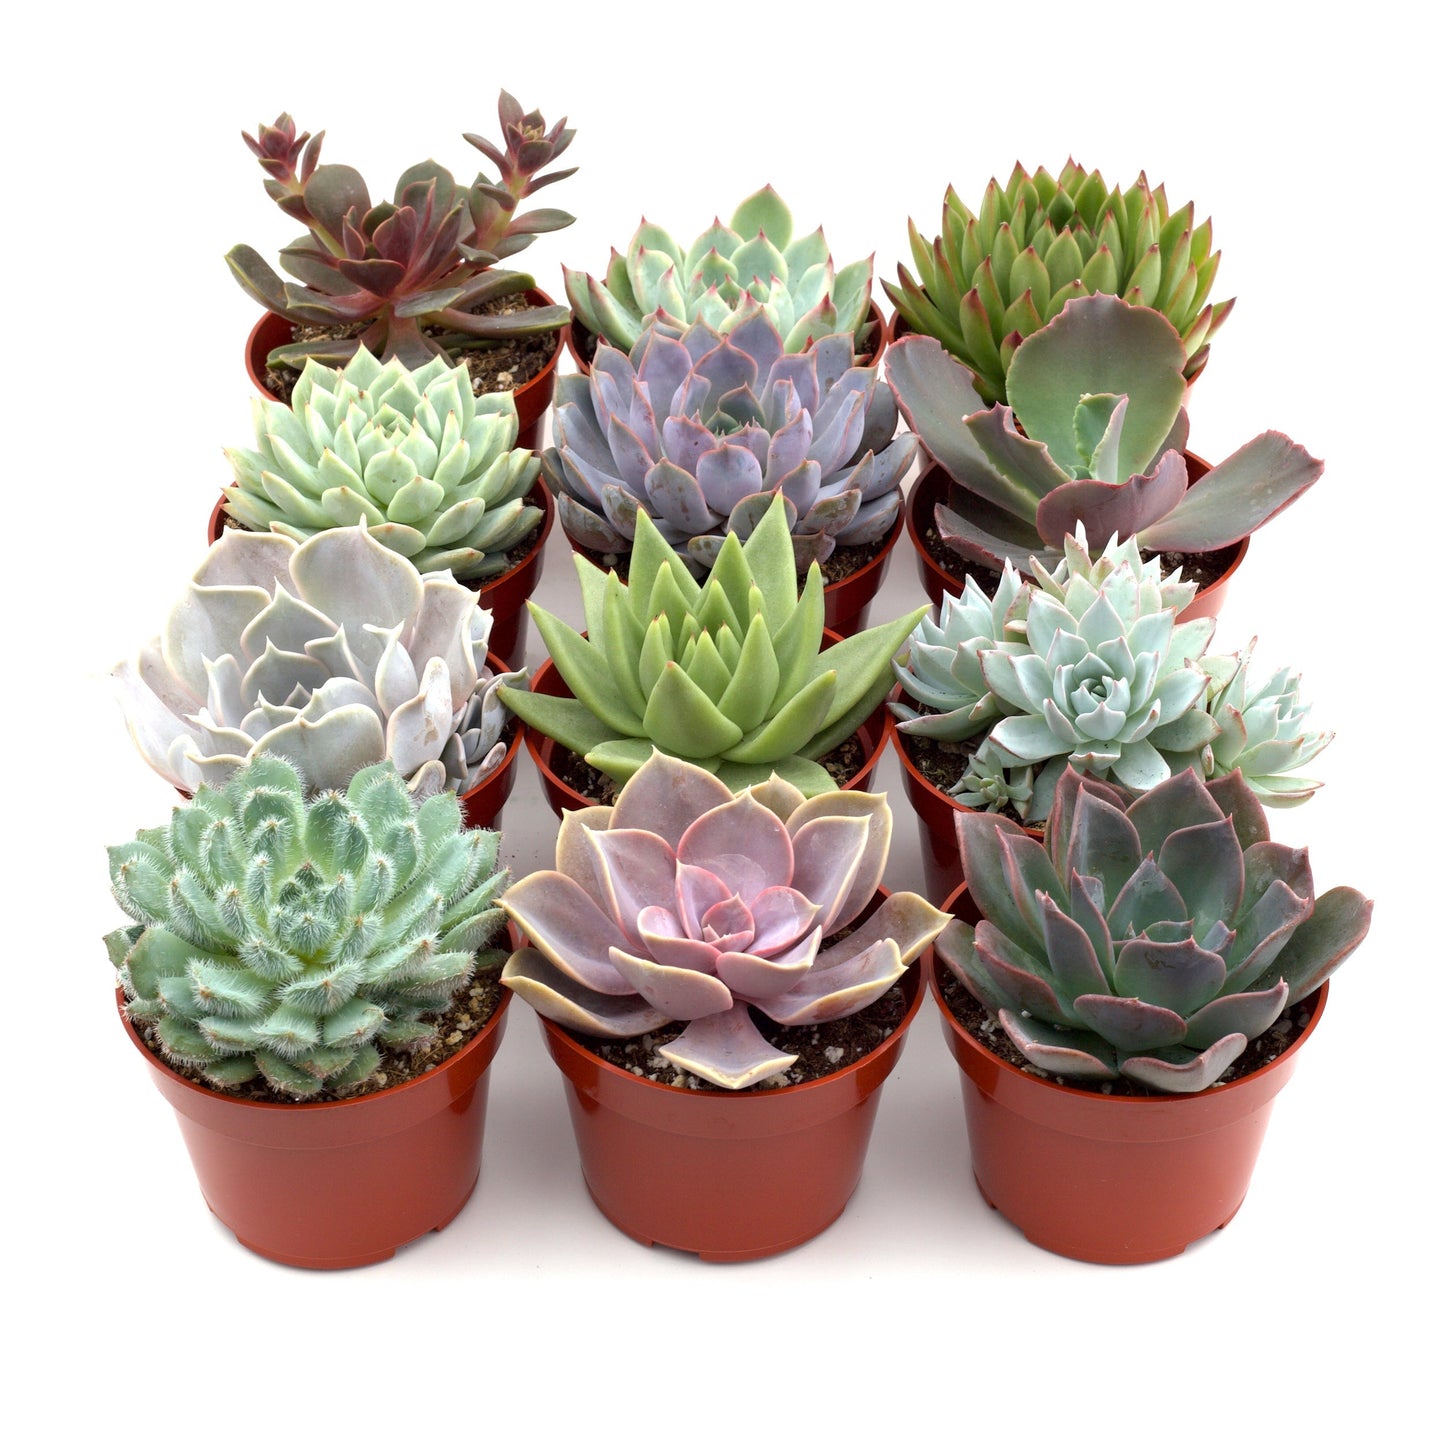 Rosette Succulent Variety Packs